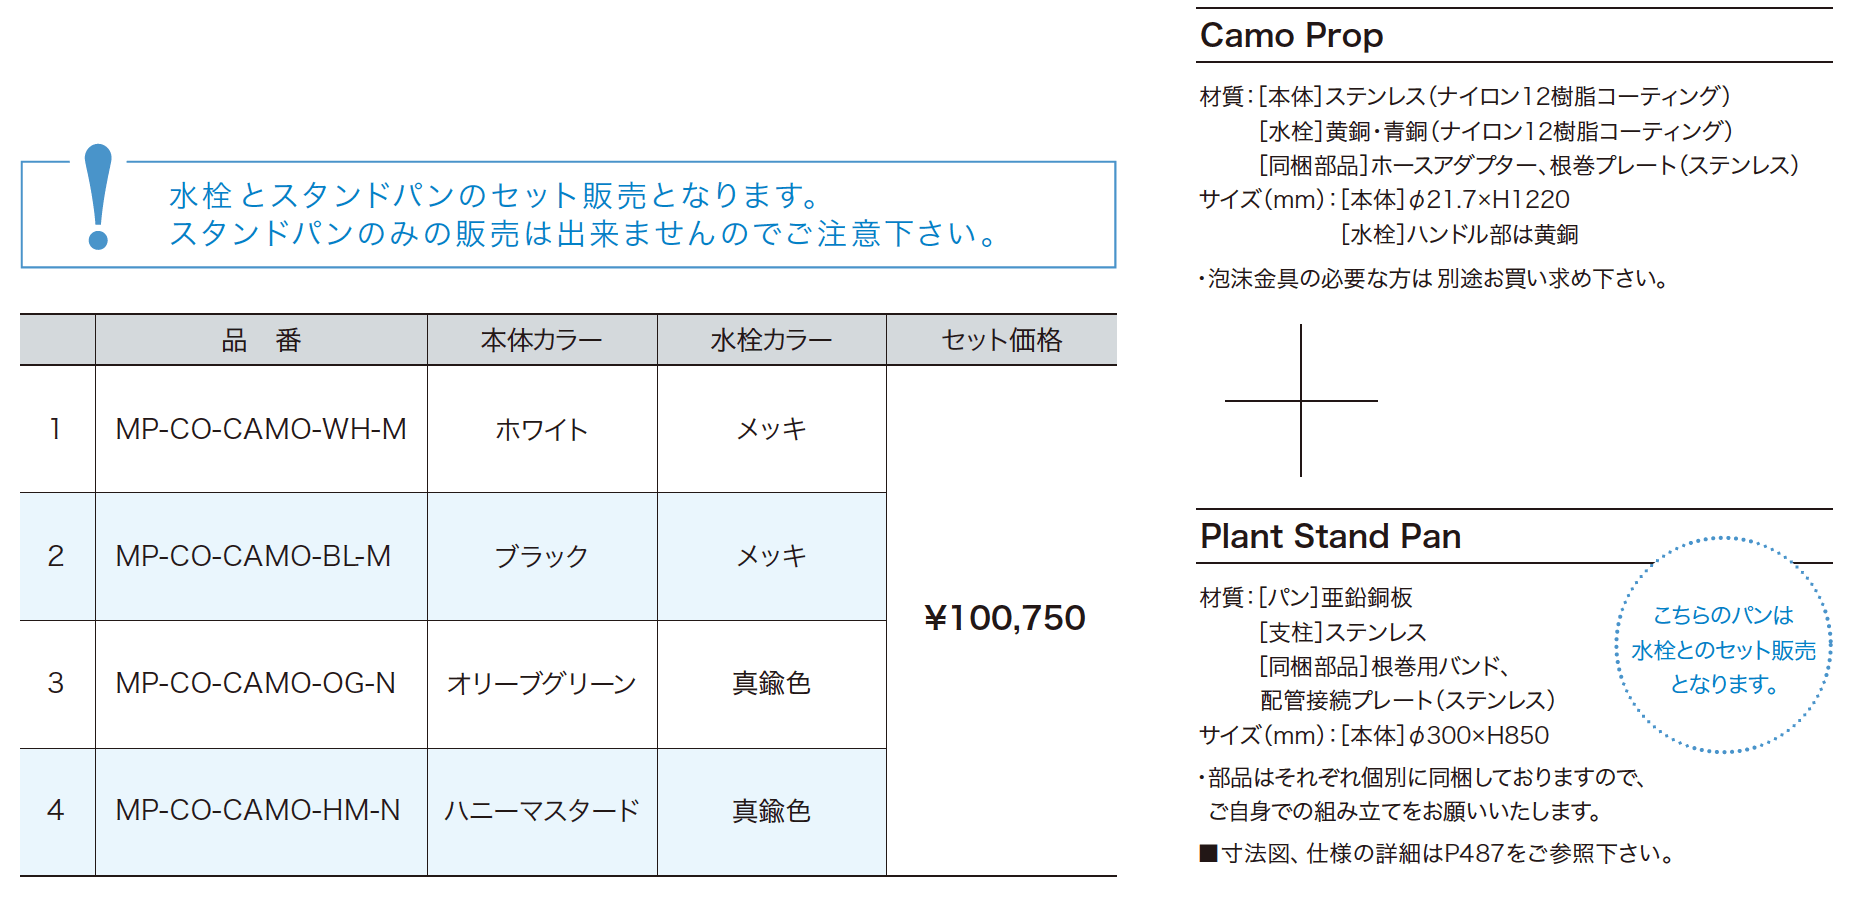 カモプロップ 小庭リウム・カモ 【2022年版】_価格_1